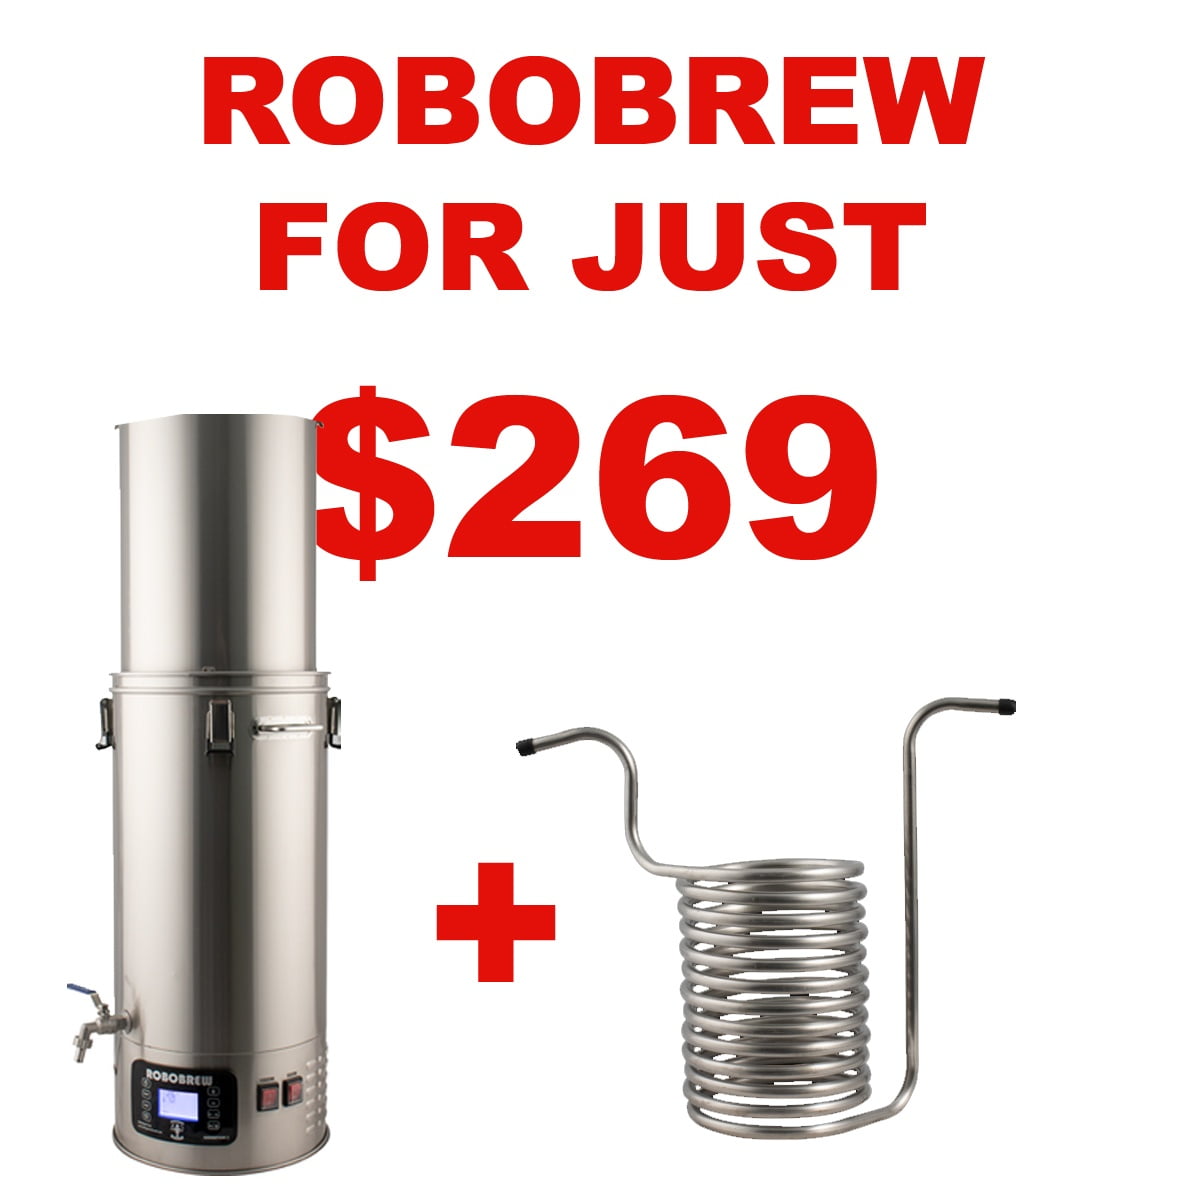 MoreBeer.com Promo Code - Get A RoboBrew v3 For Just $269